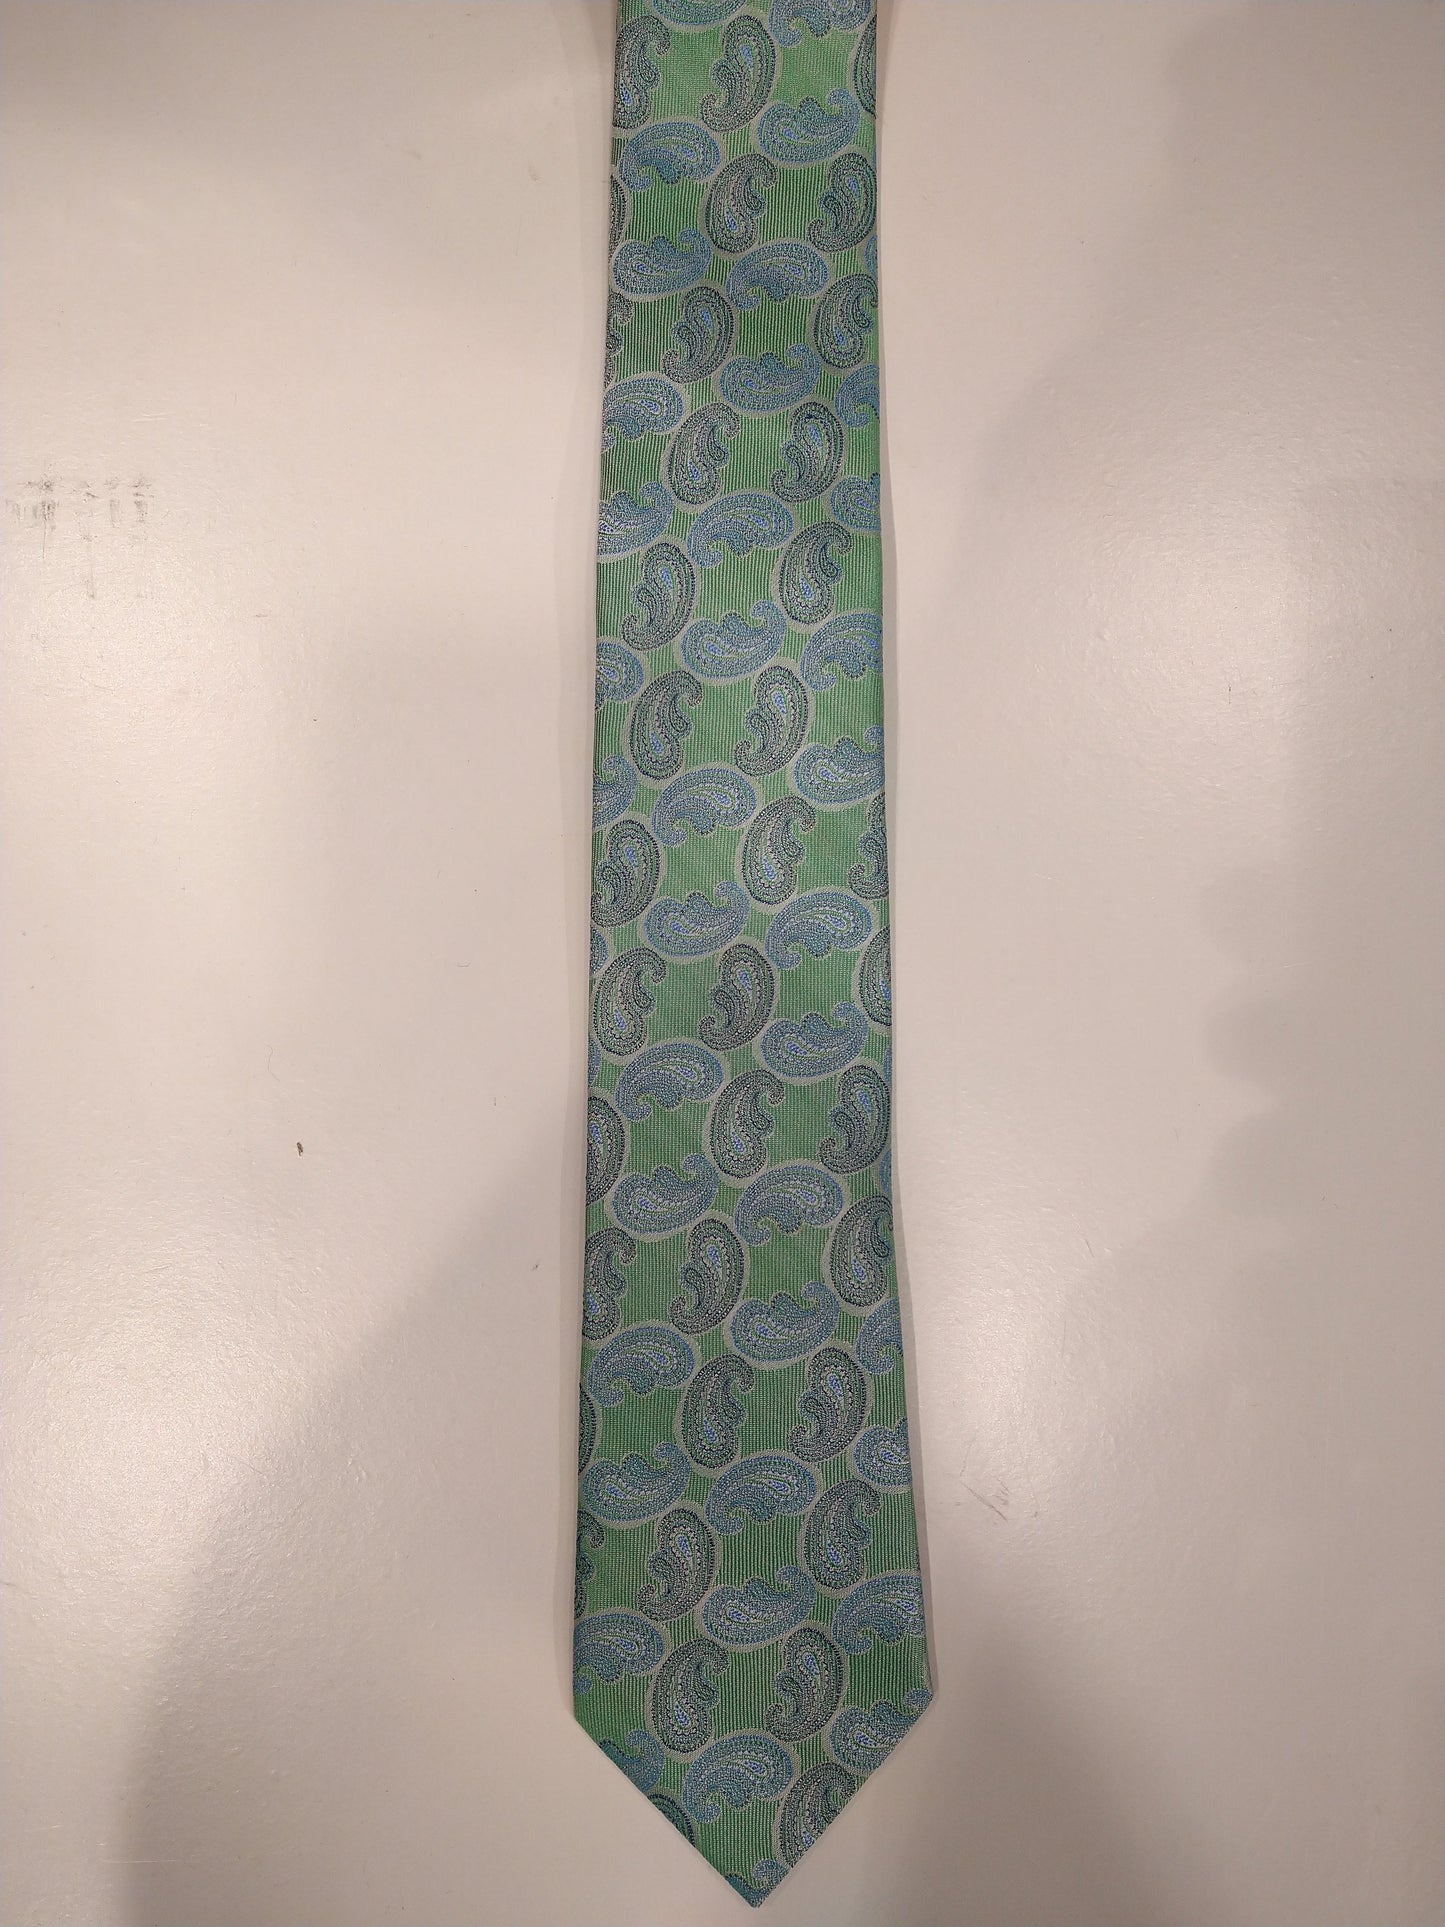 Max Goodman Silk la corbata de seda. Motif verde azulado.